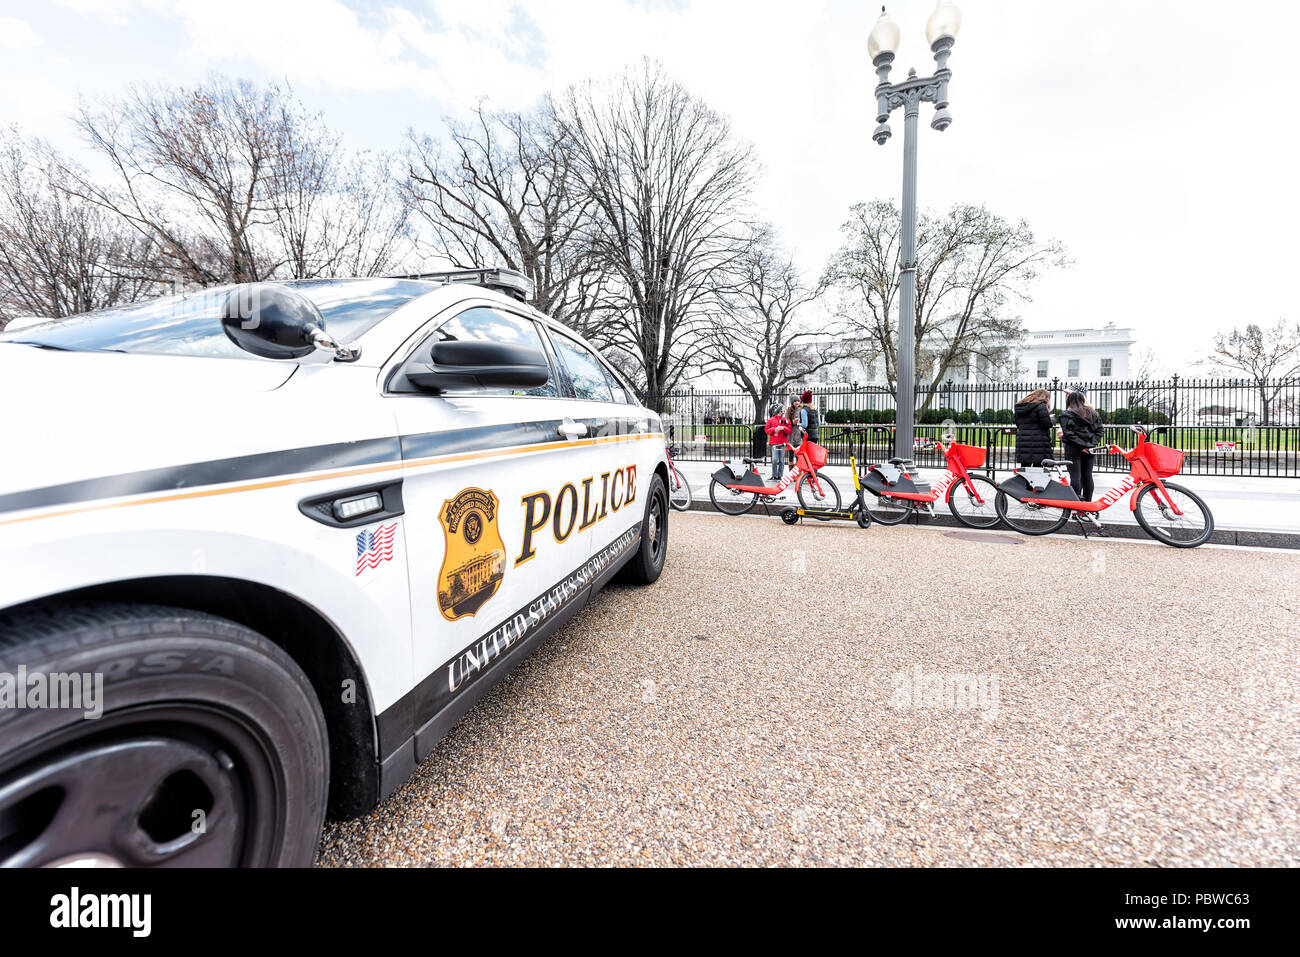 Washington DC, USA - 9. März 2018: Menschen im White House Präsident Gebäude in der Hauptstadt der Vereinigten Staaten, Nahaufnahme der Polizei Auto, Zeichen, Zaun Stockfoto